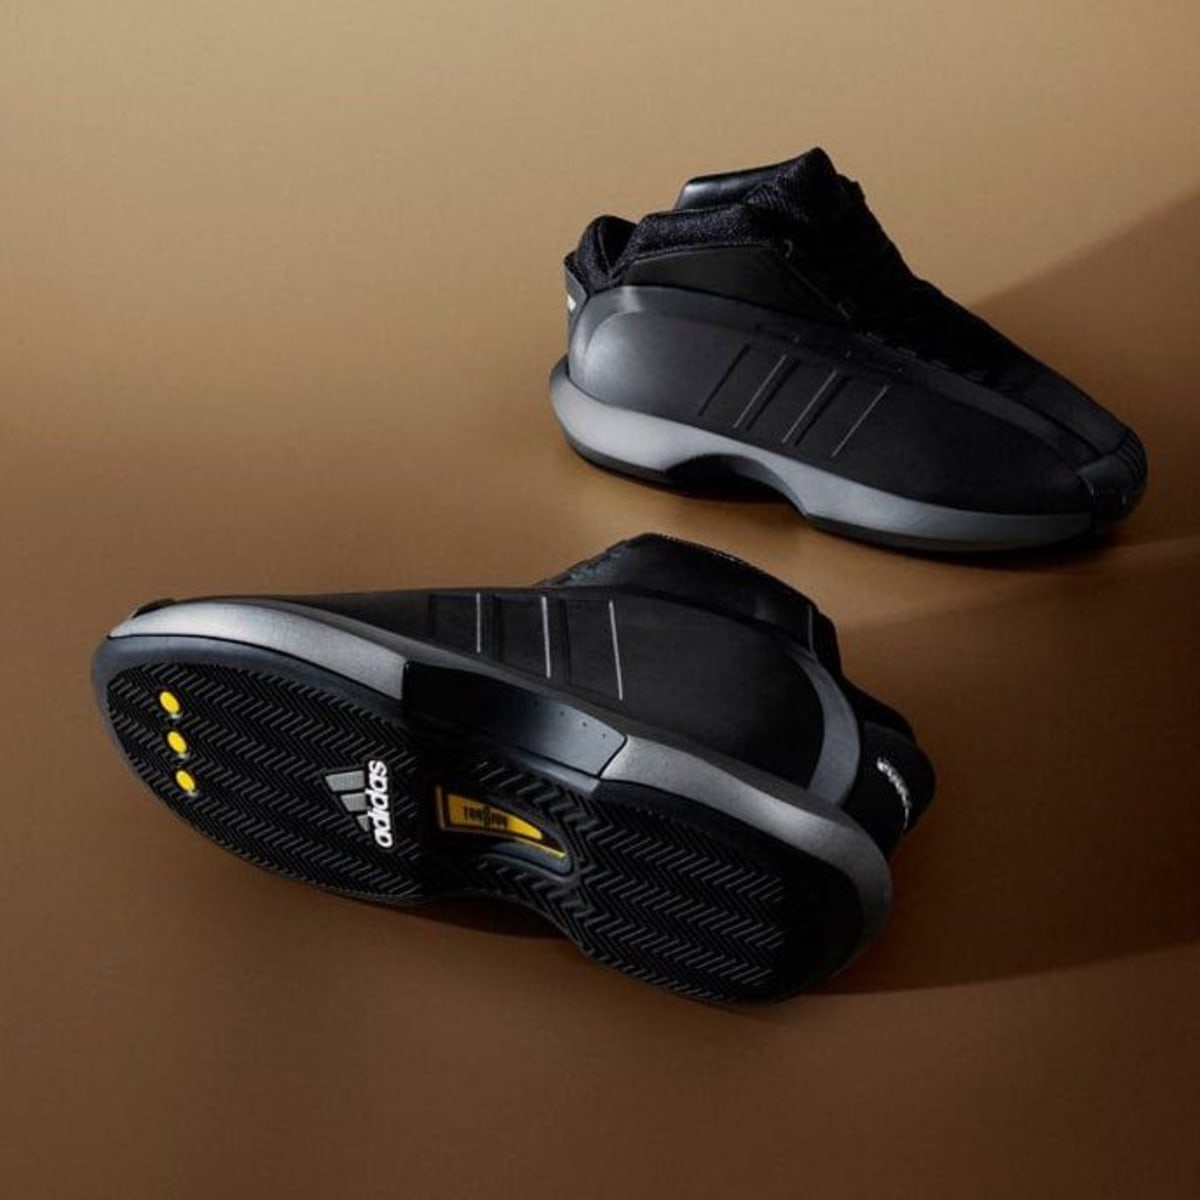 Kobe Bryant's Retro Adidas Sneakers Drop in Black Colorway